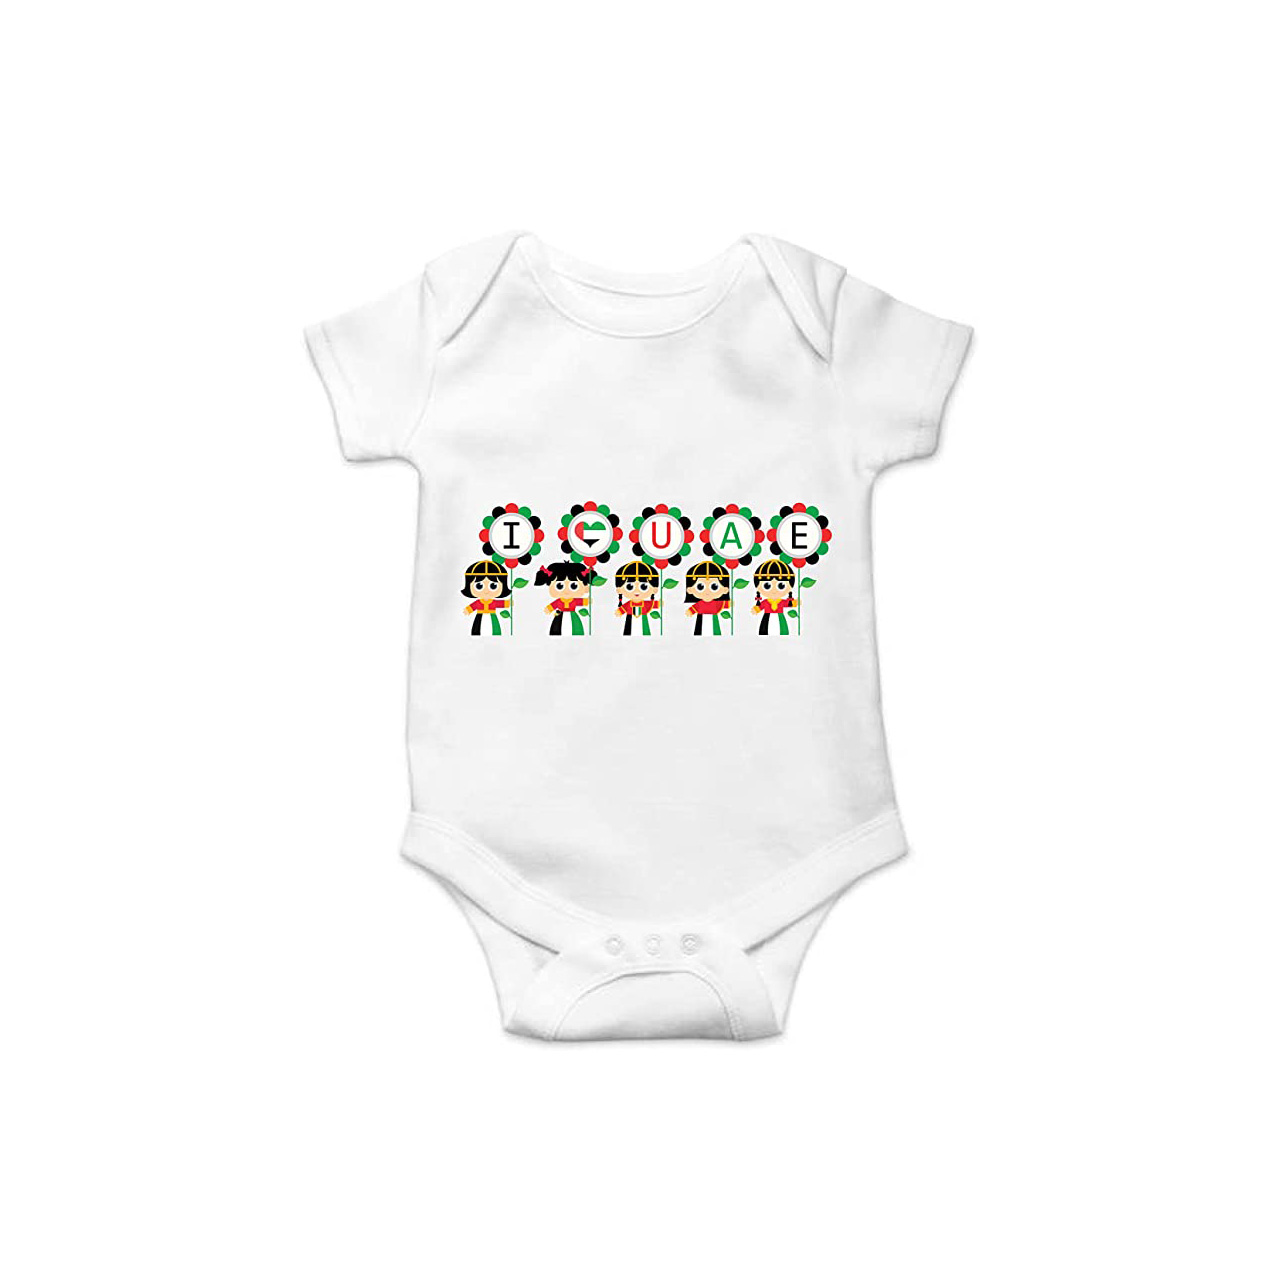 UAE Baby Romper unisex (Design 5)